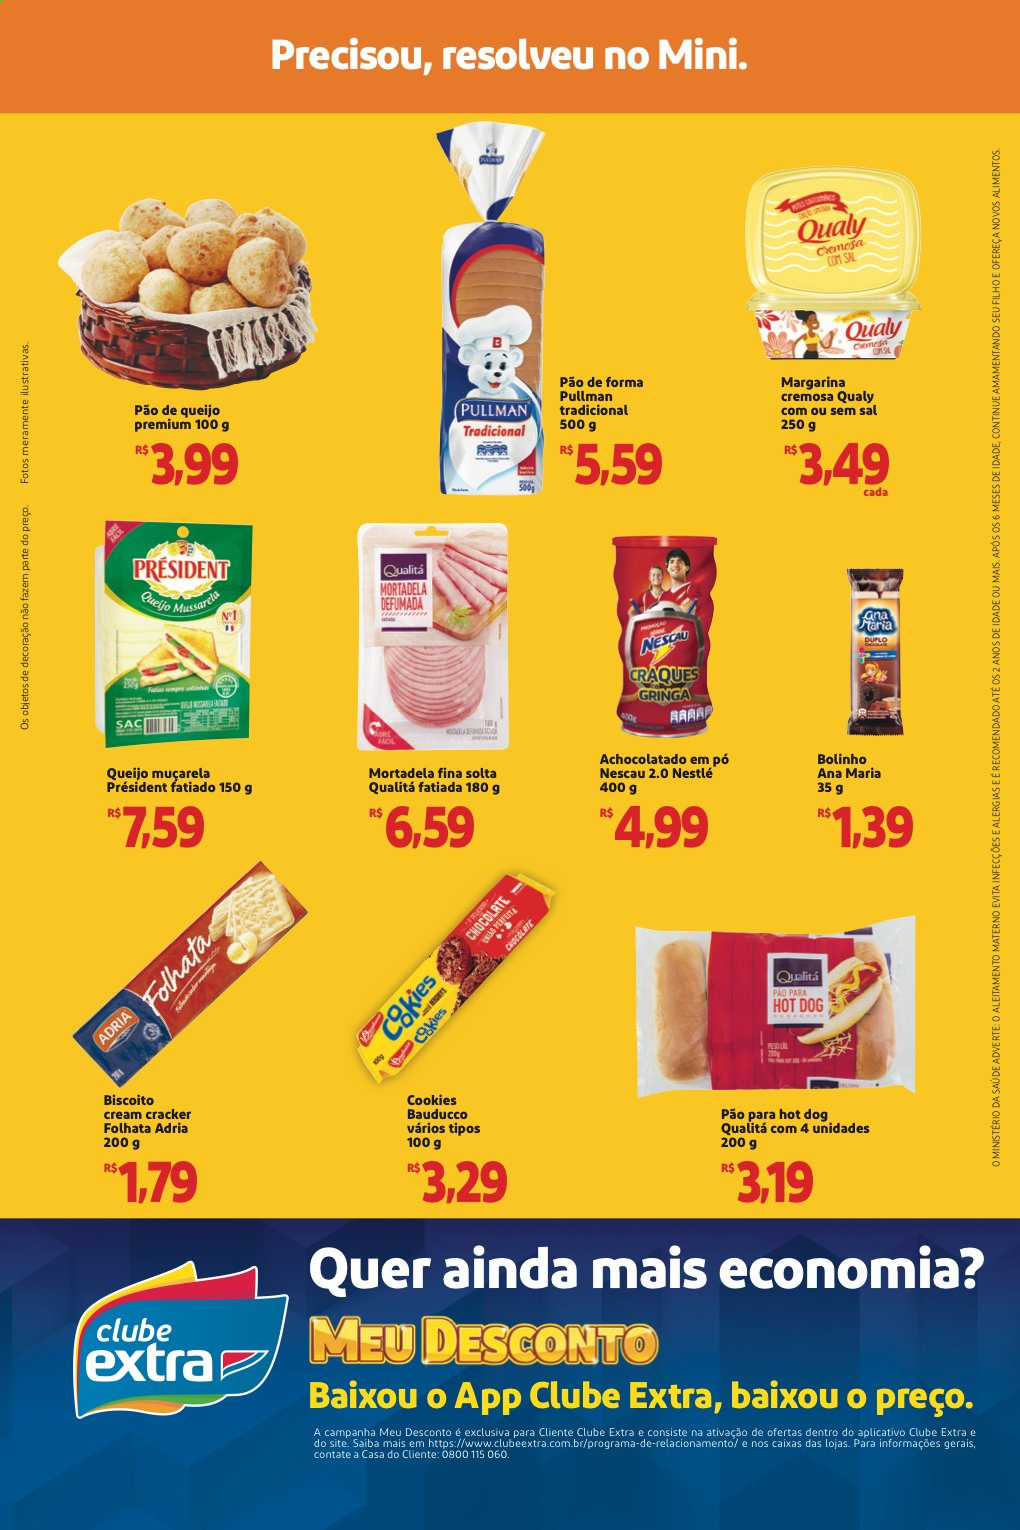 thumbnail - Folheto Mini Extra - 07/05/2021 - 13/05/2021 - Produtos em promoção - pão de queijo, pão, pão de forma, mortadela, mozzarella, achocolatado, margarina, biscoito, folhata, Nestlé, cracker, Nescau. Página 2.